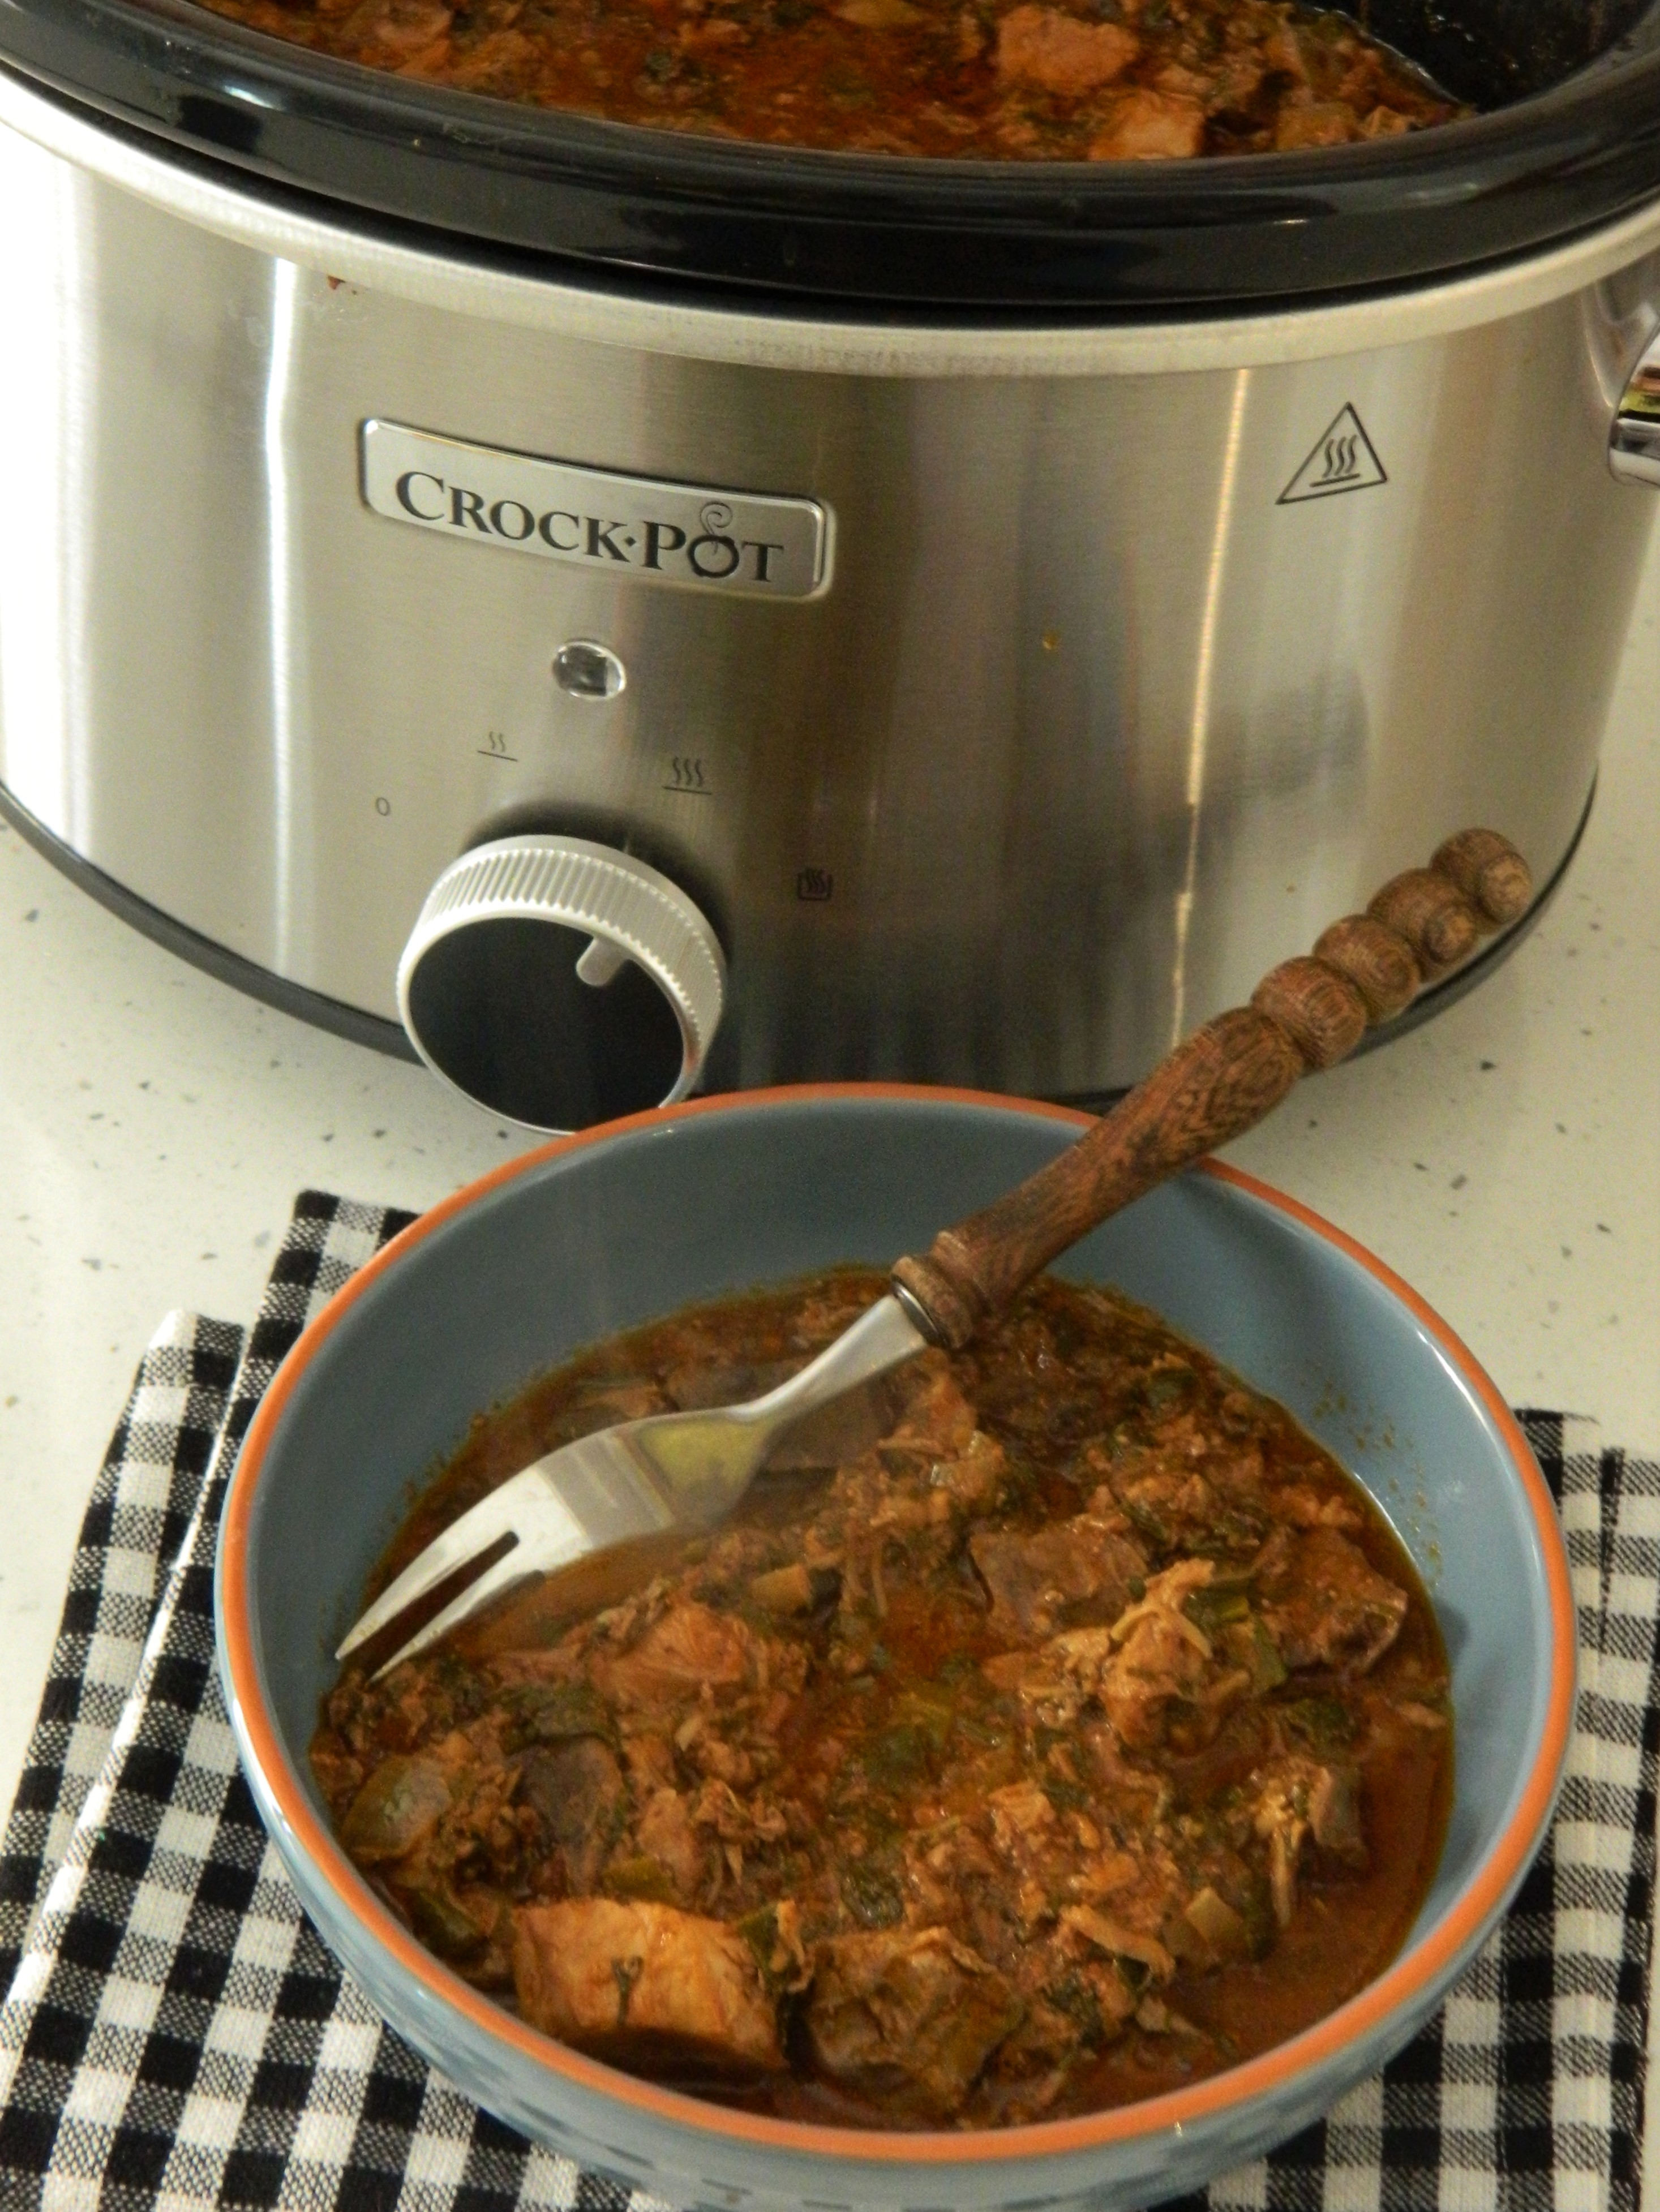 Mancare greceasca de miel capama) gatita la slow cooker Crock Pot